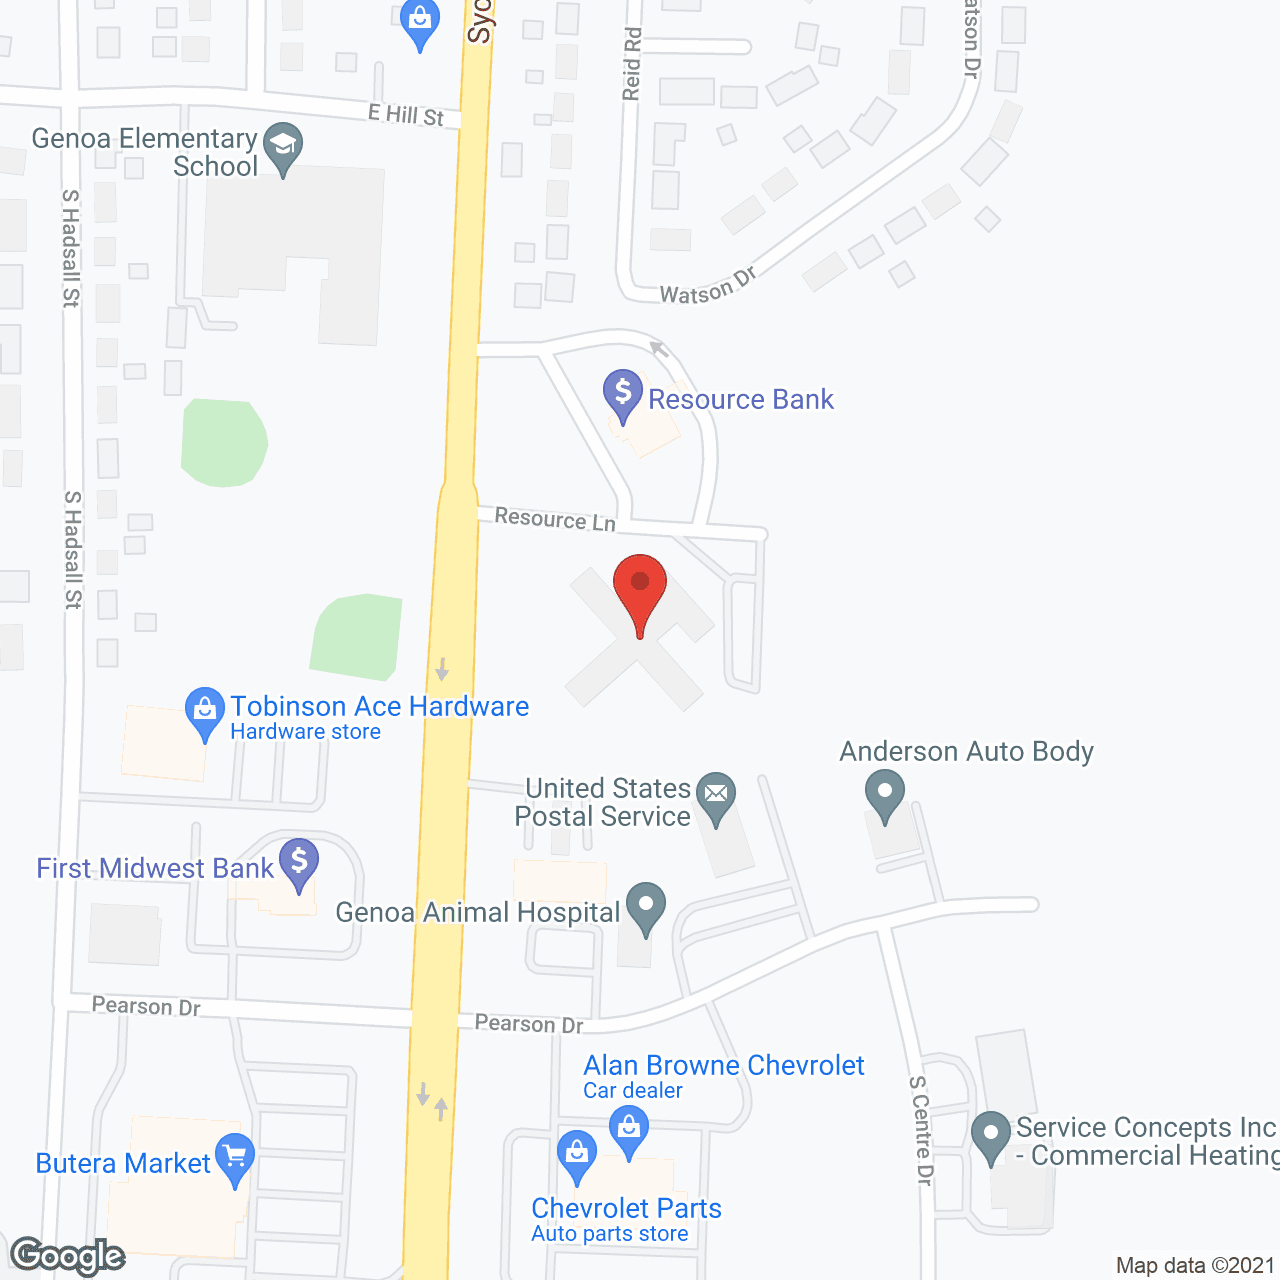 Genesis House in google map